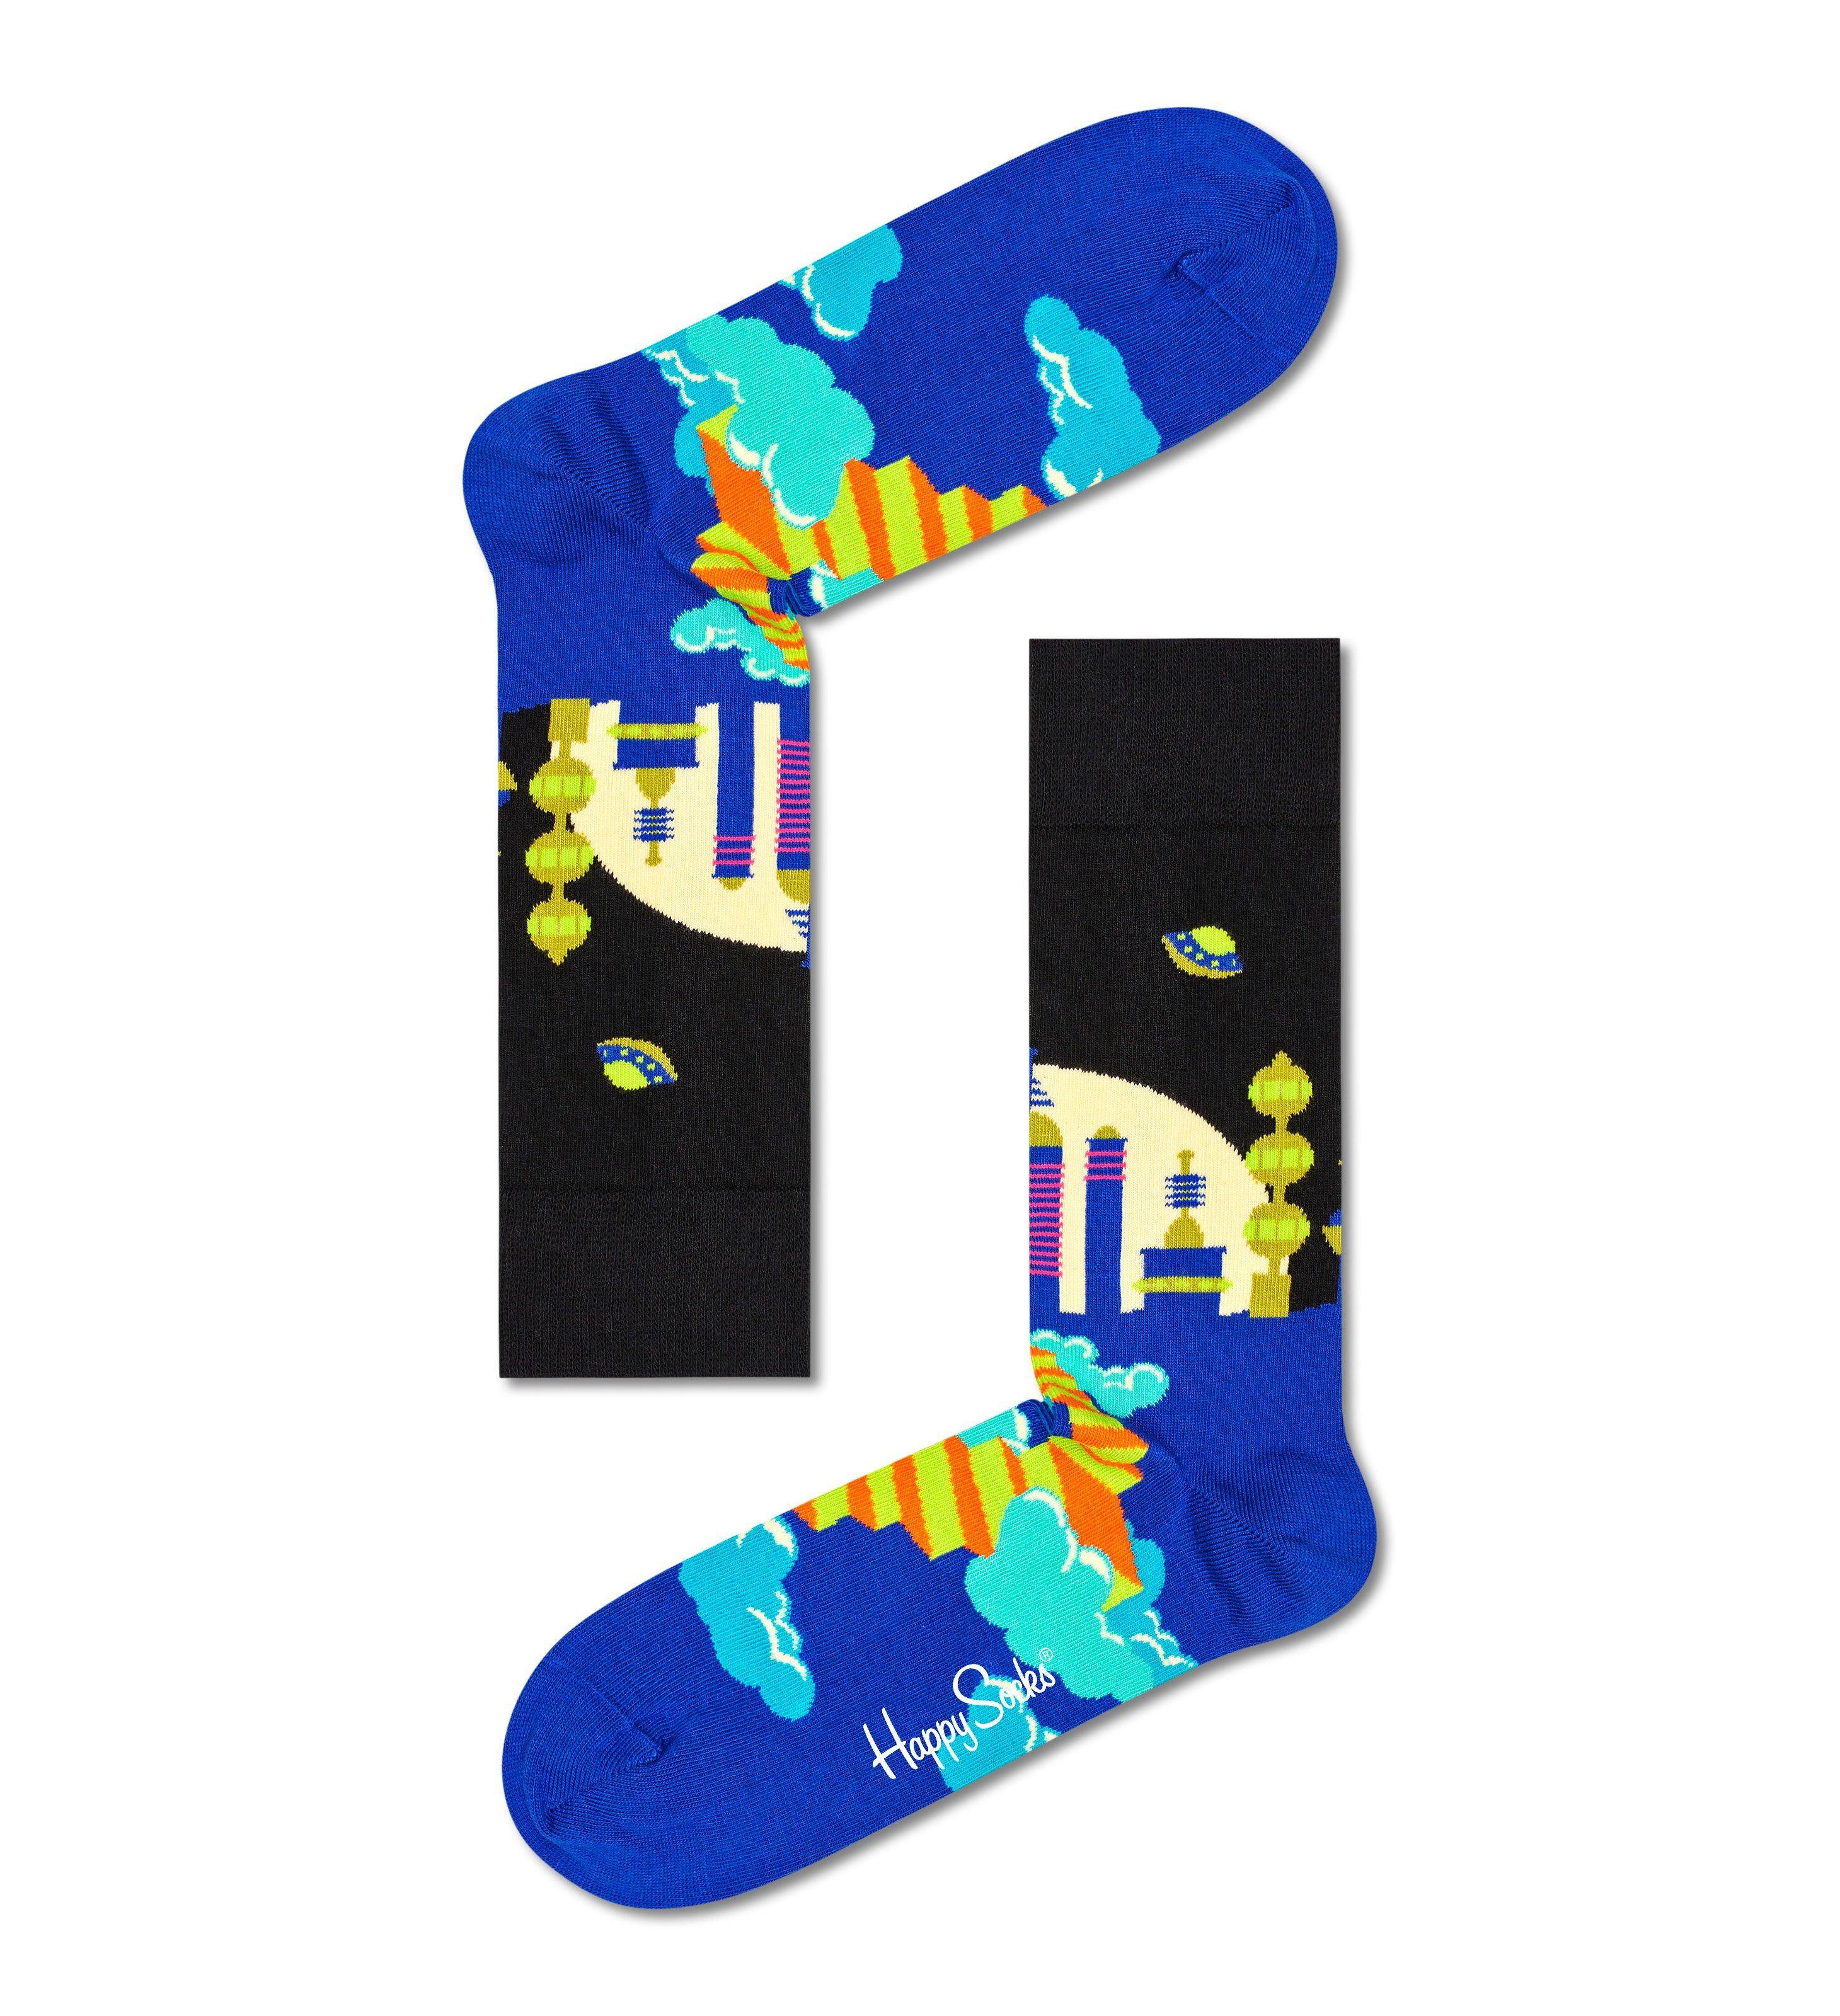 Носки Happy socks City X Sock CIX01 9300, размер 25 - фото 2